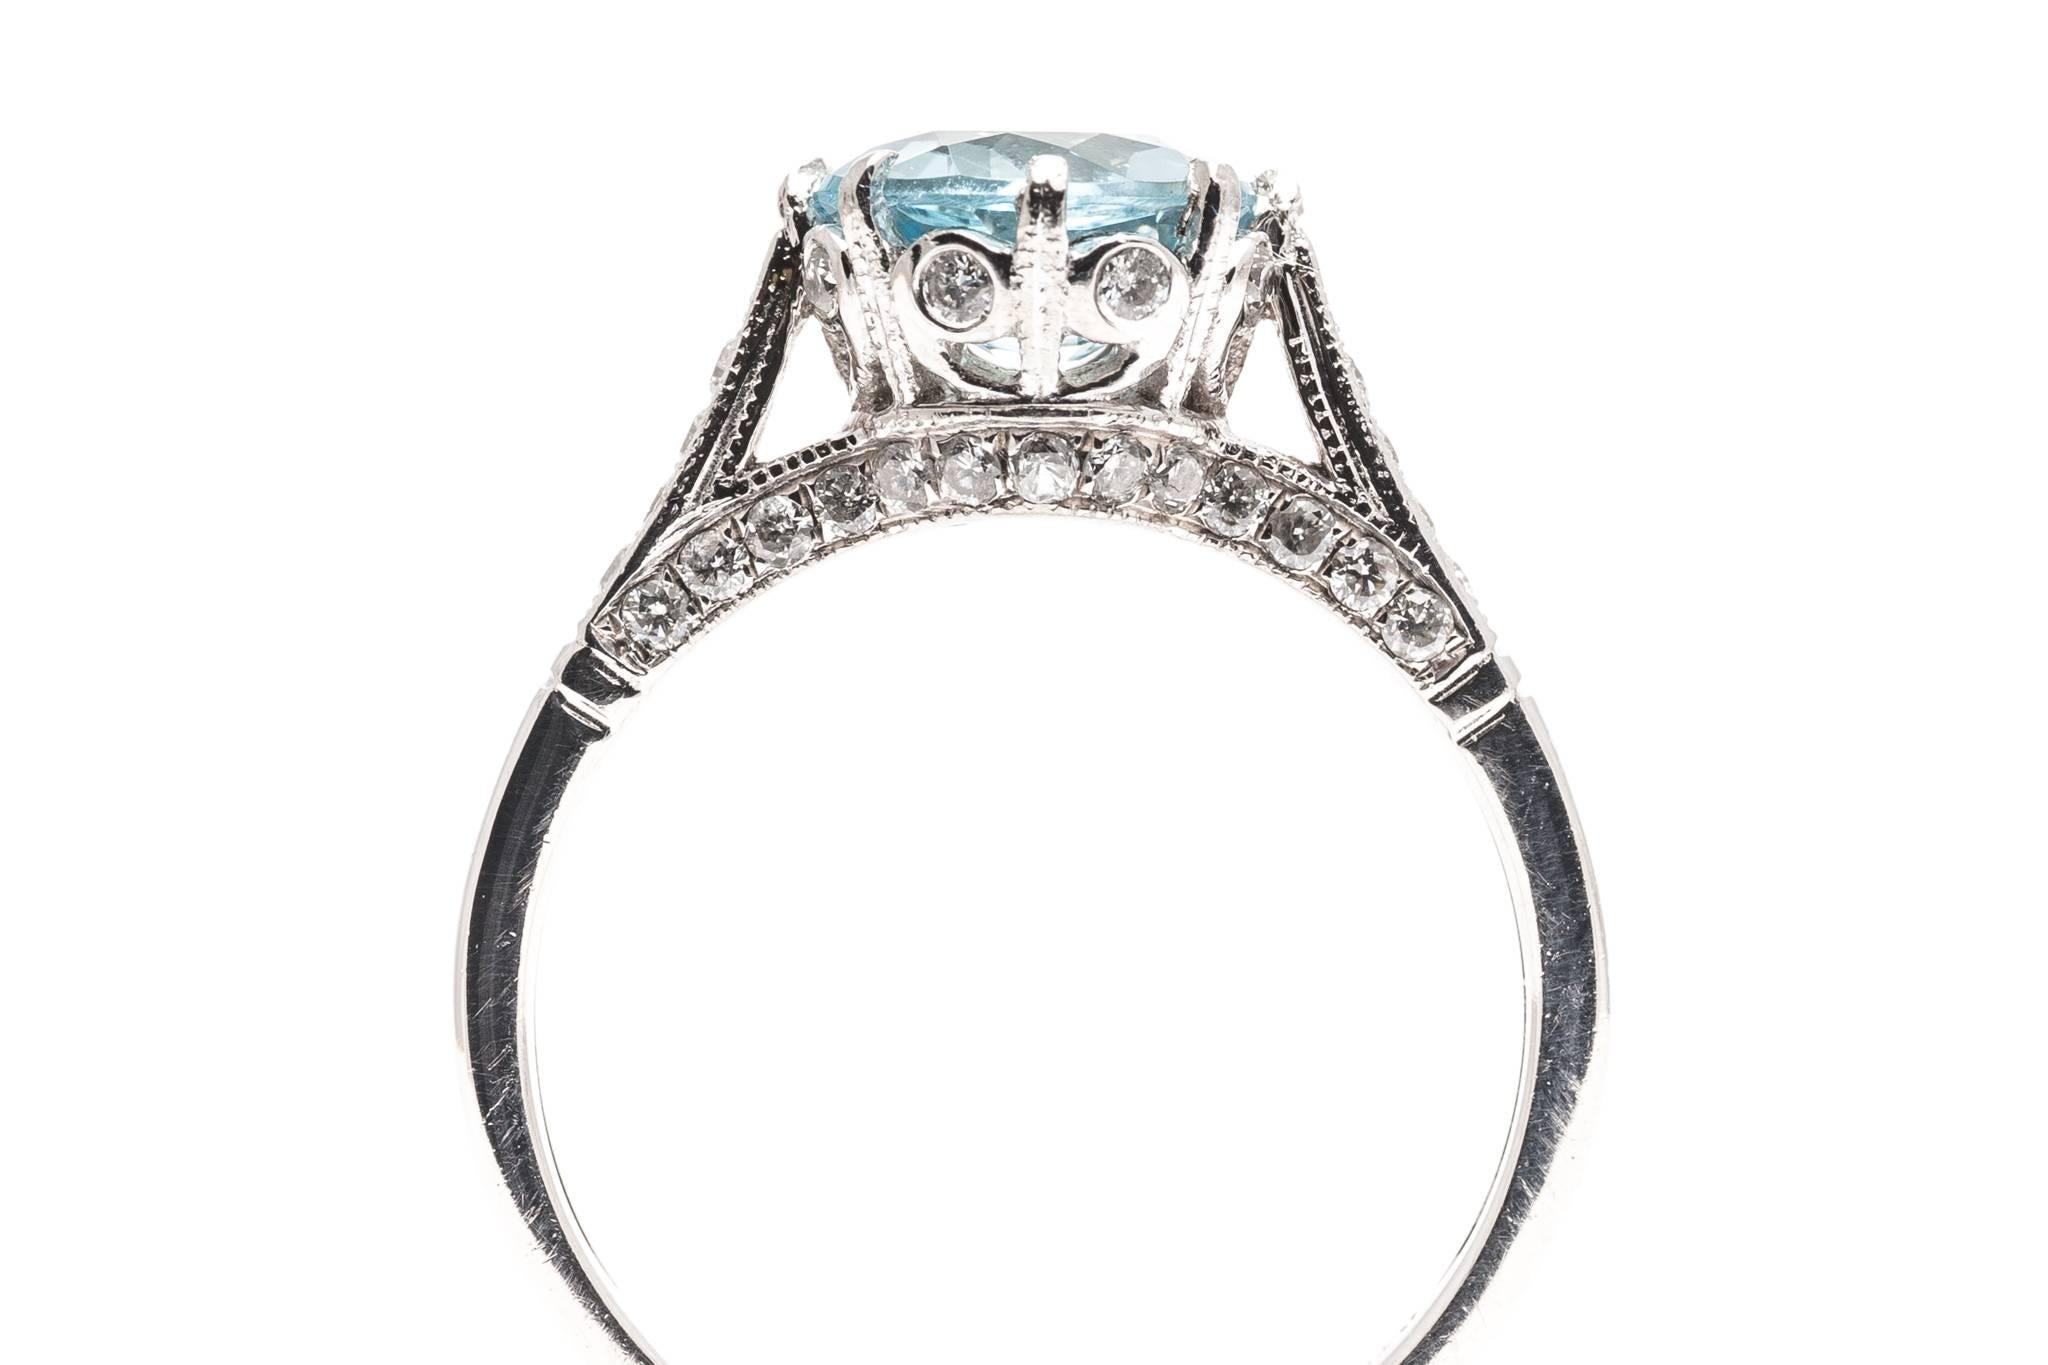  Aquamarine and Pave Diamond Ring in Platinum 1